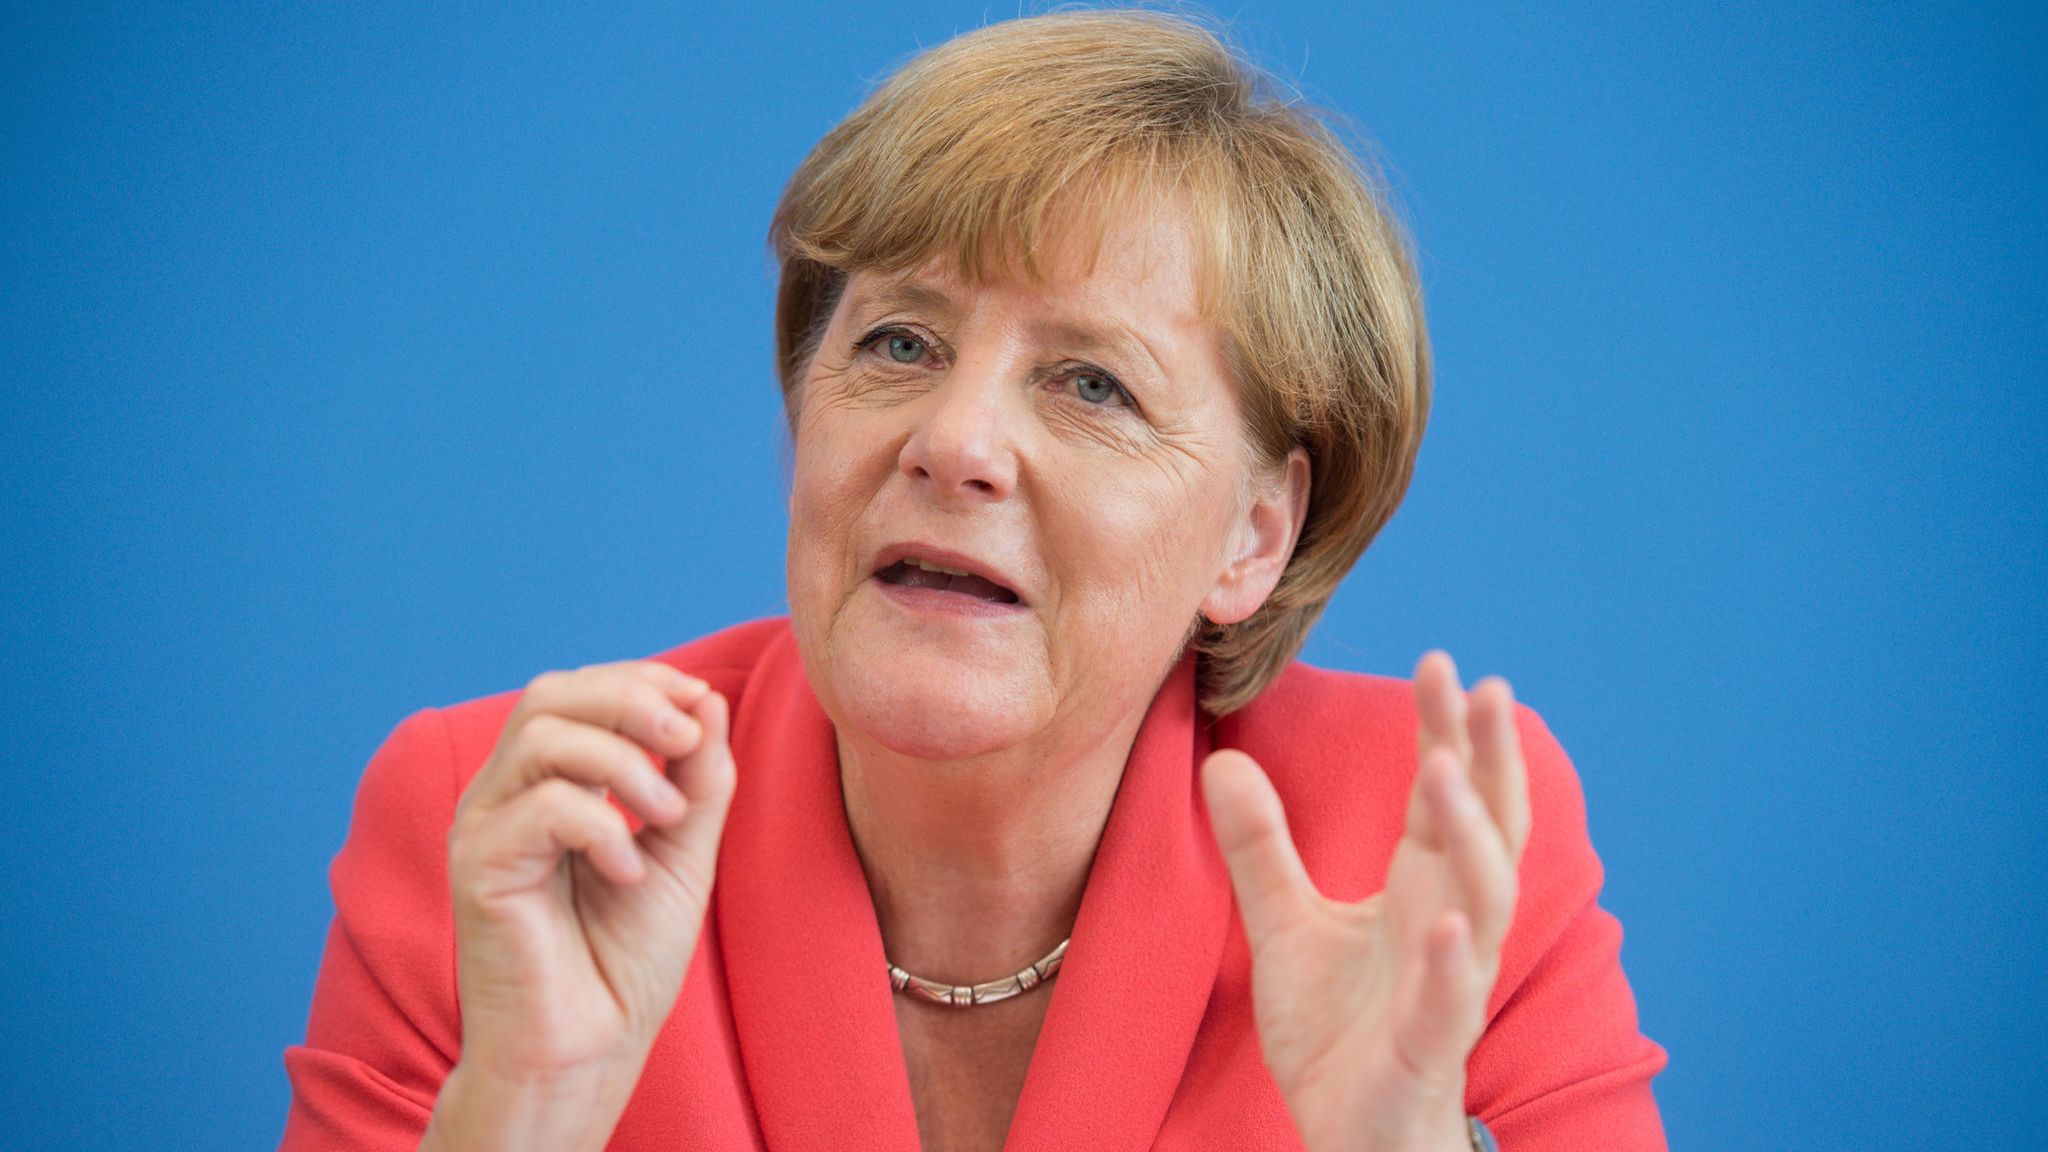 Fünf "Wir schaffen das" Wie Merkels Satz historisch wurde |